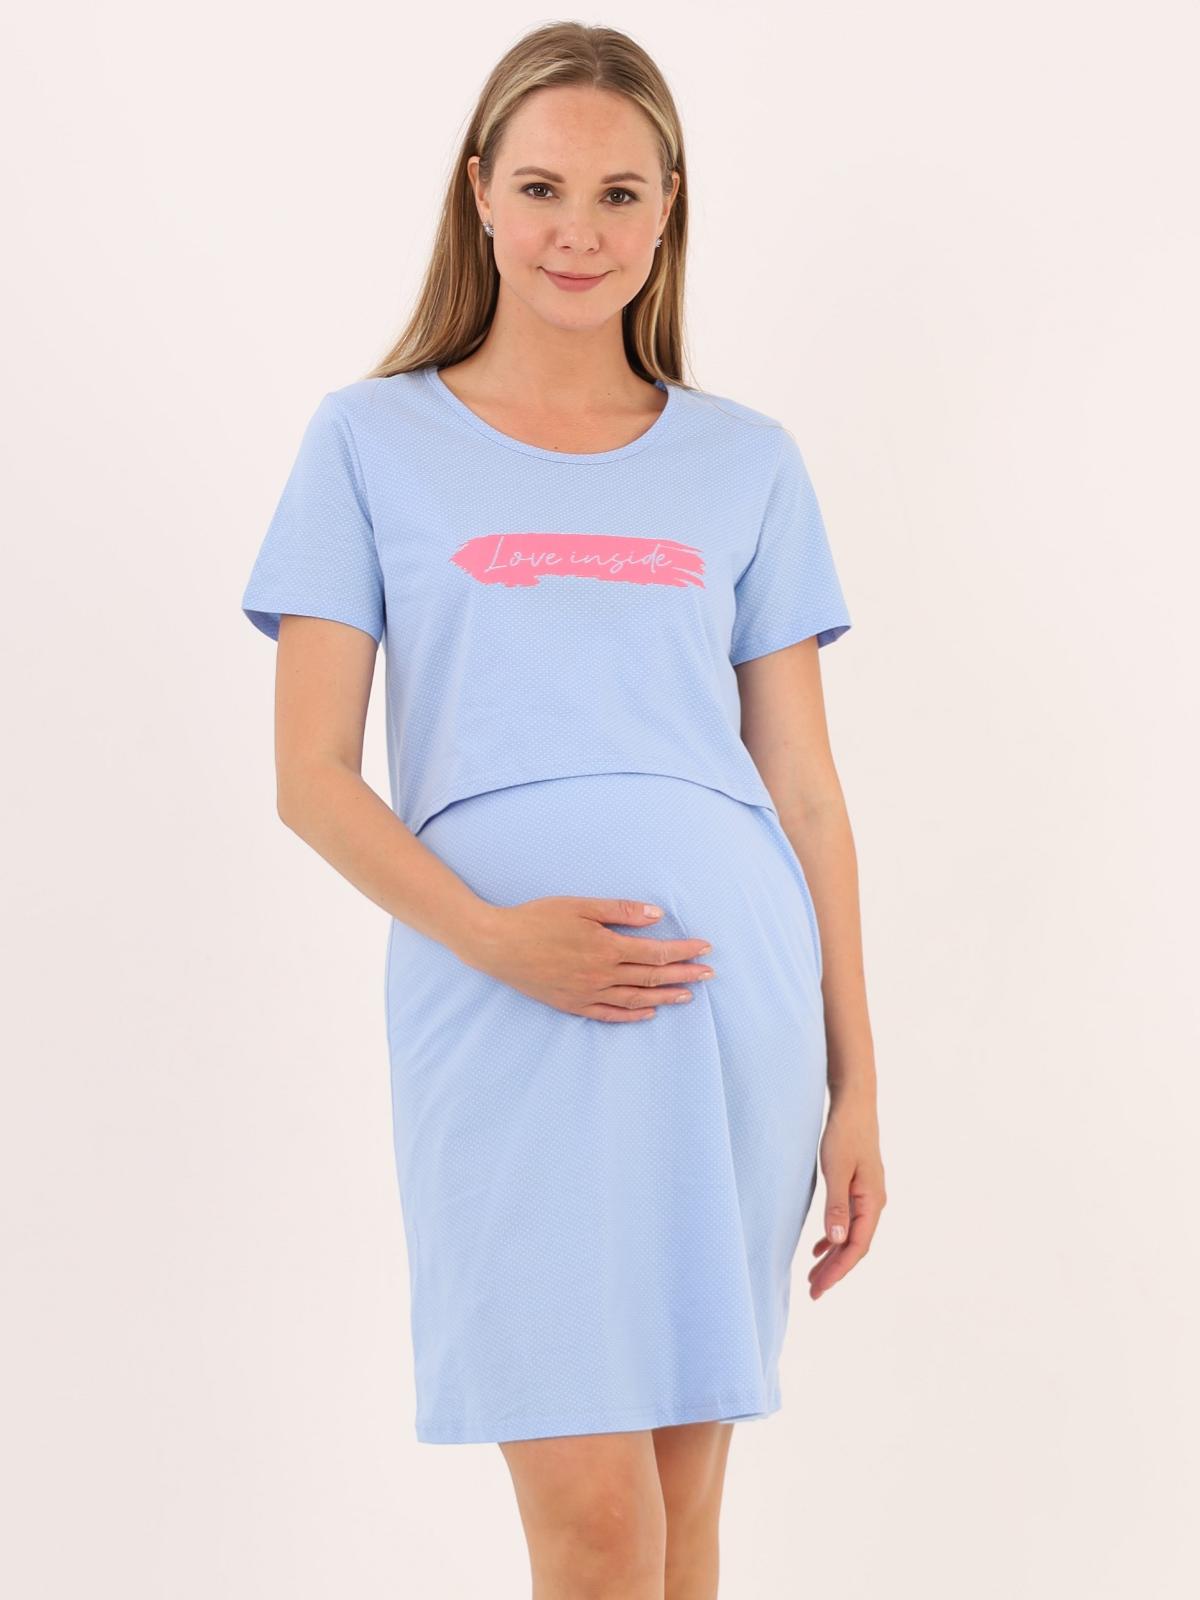 Сорочка для беременных и кормящих (домашнее платье) арт. 360505 голубая